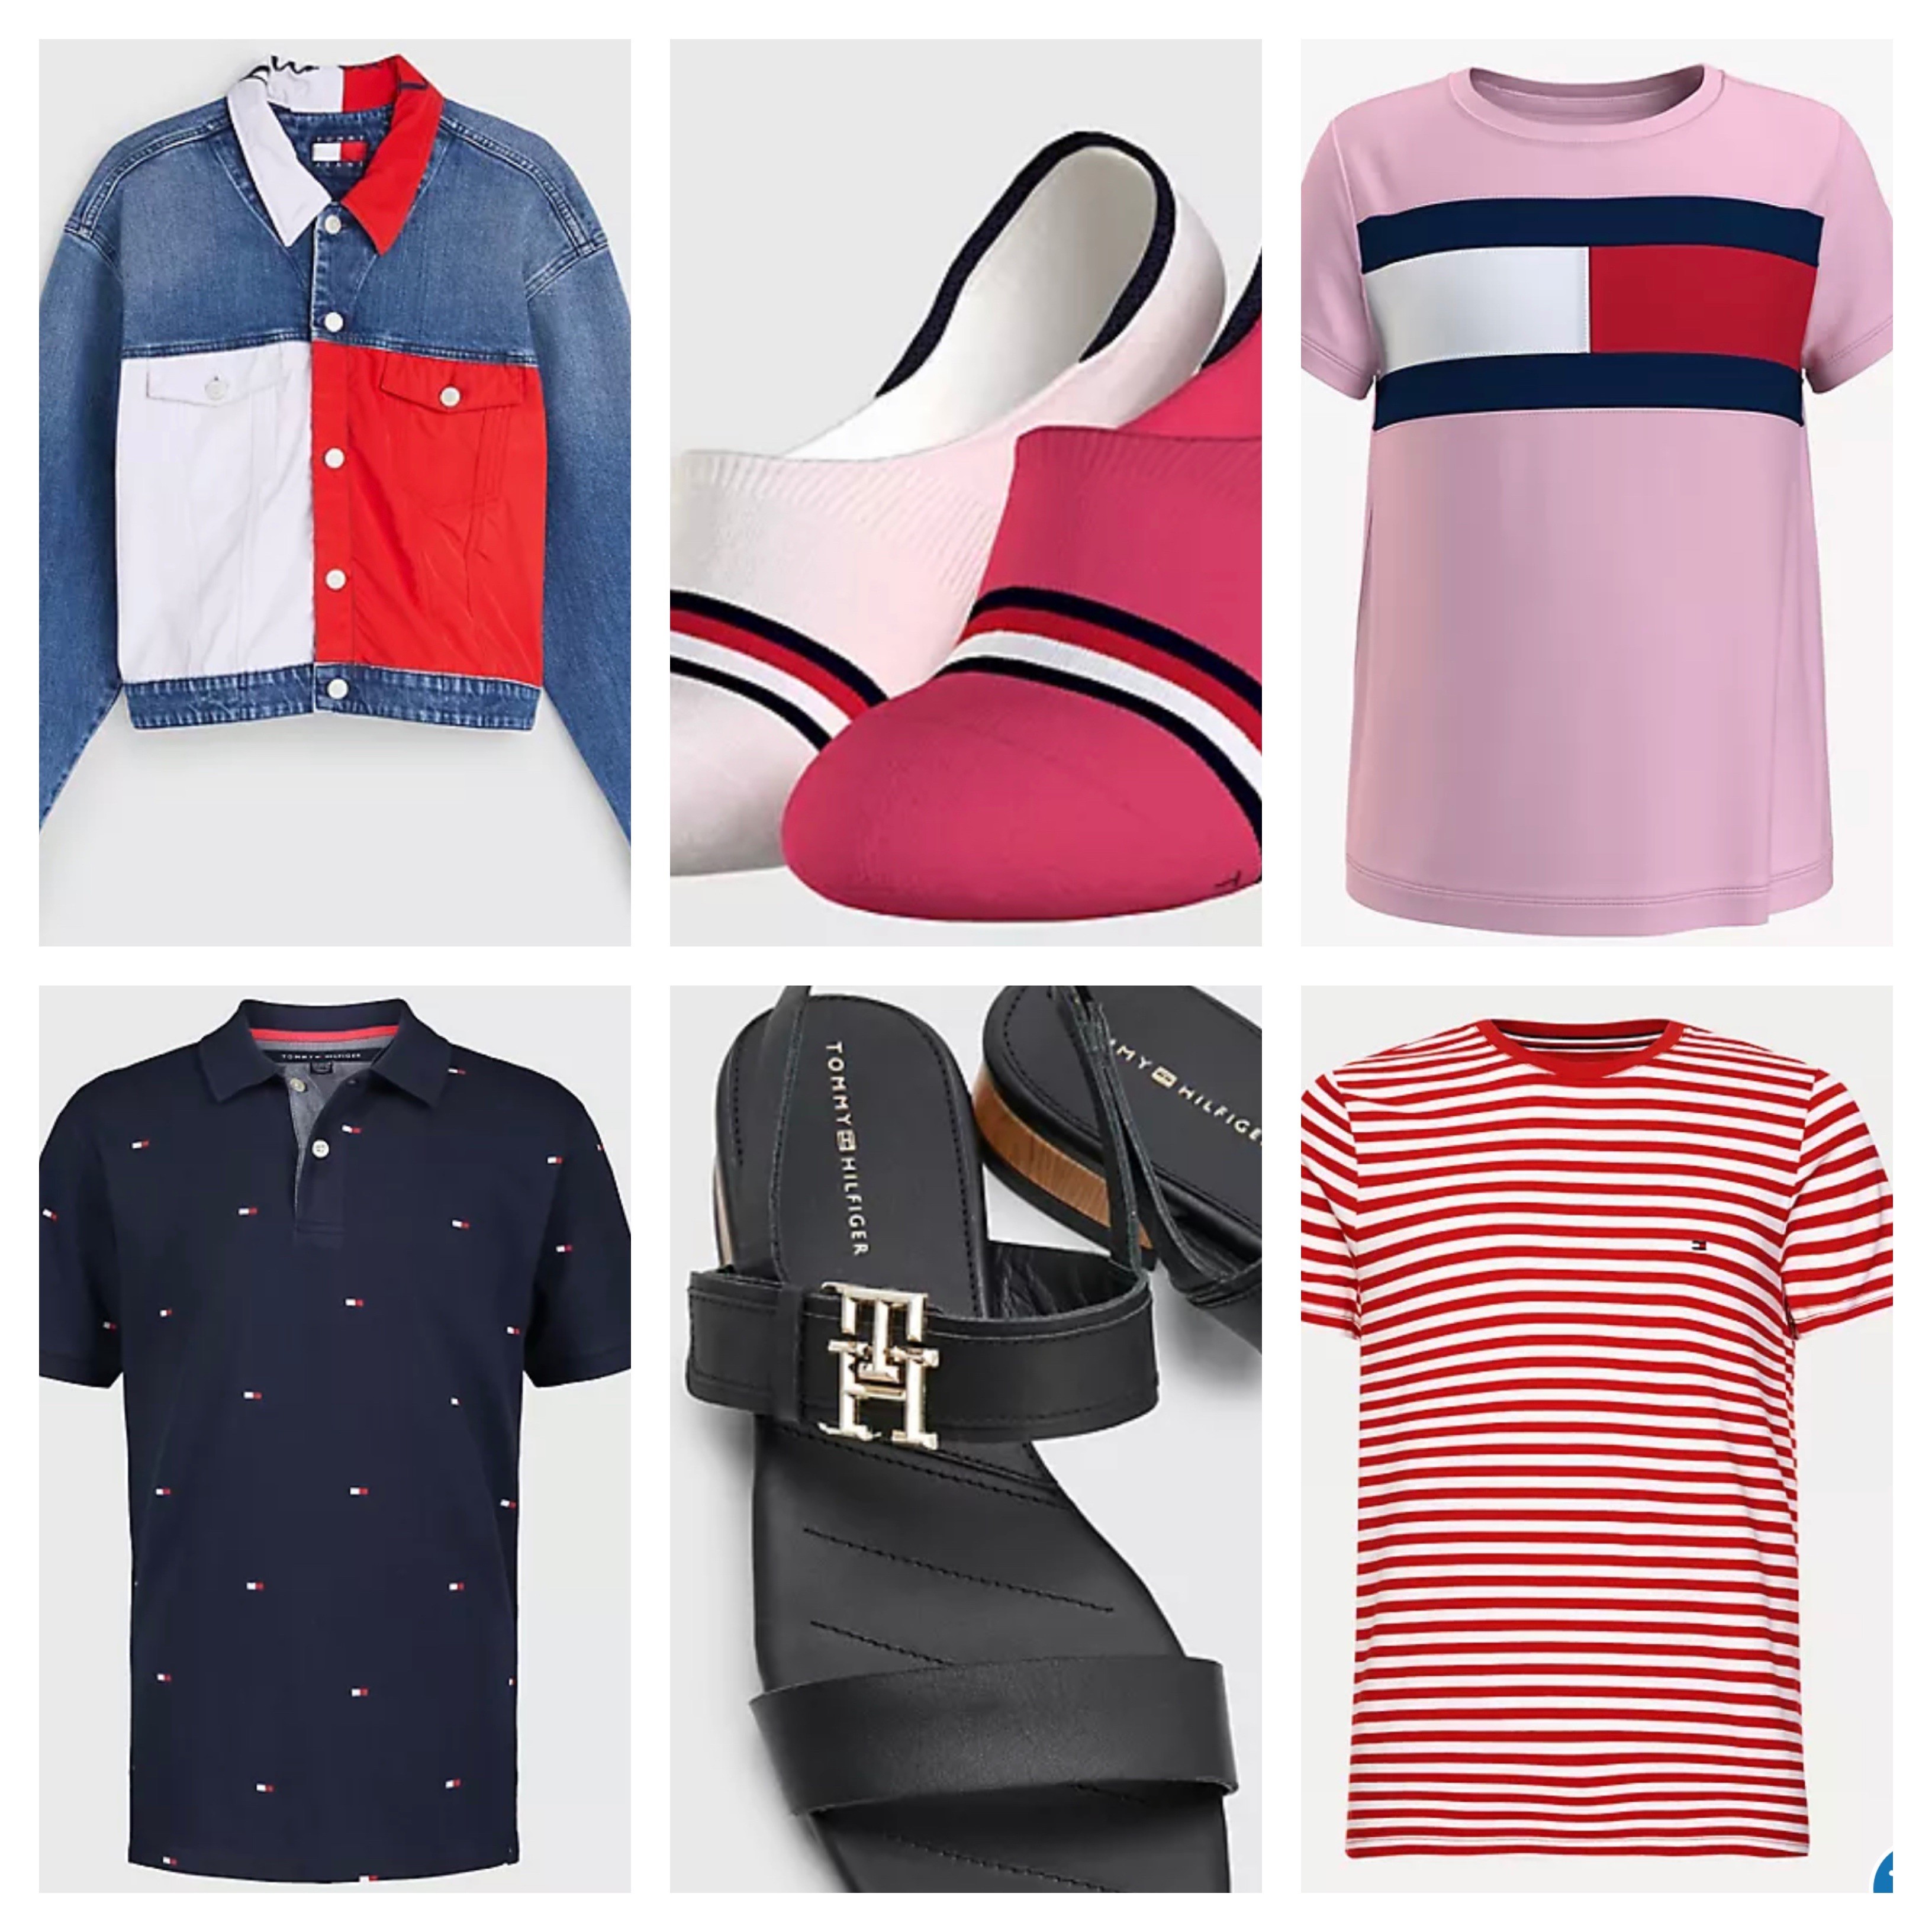 Allergisk skrige frustrerende Tommy Hilfiger sale: Up to 70% off clothing, shoes, accessories -  cleveland.com